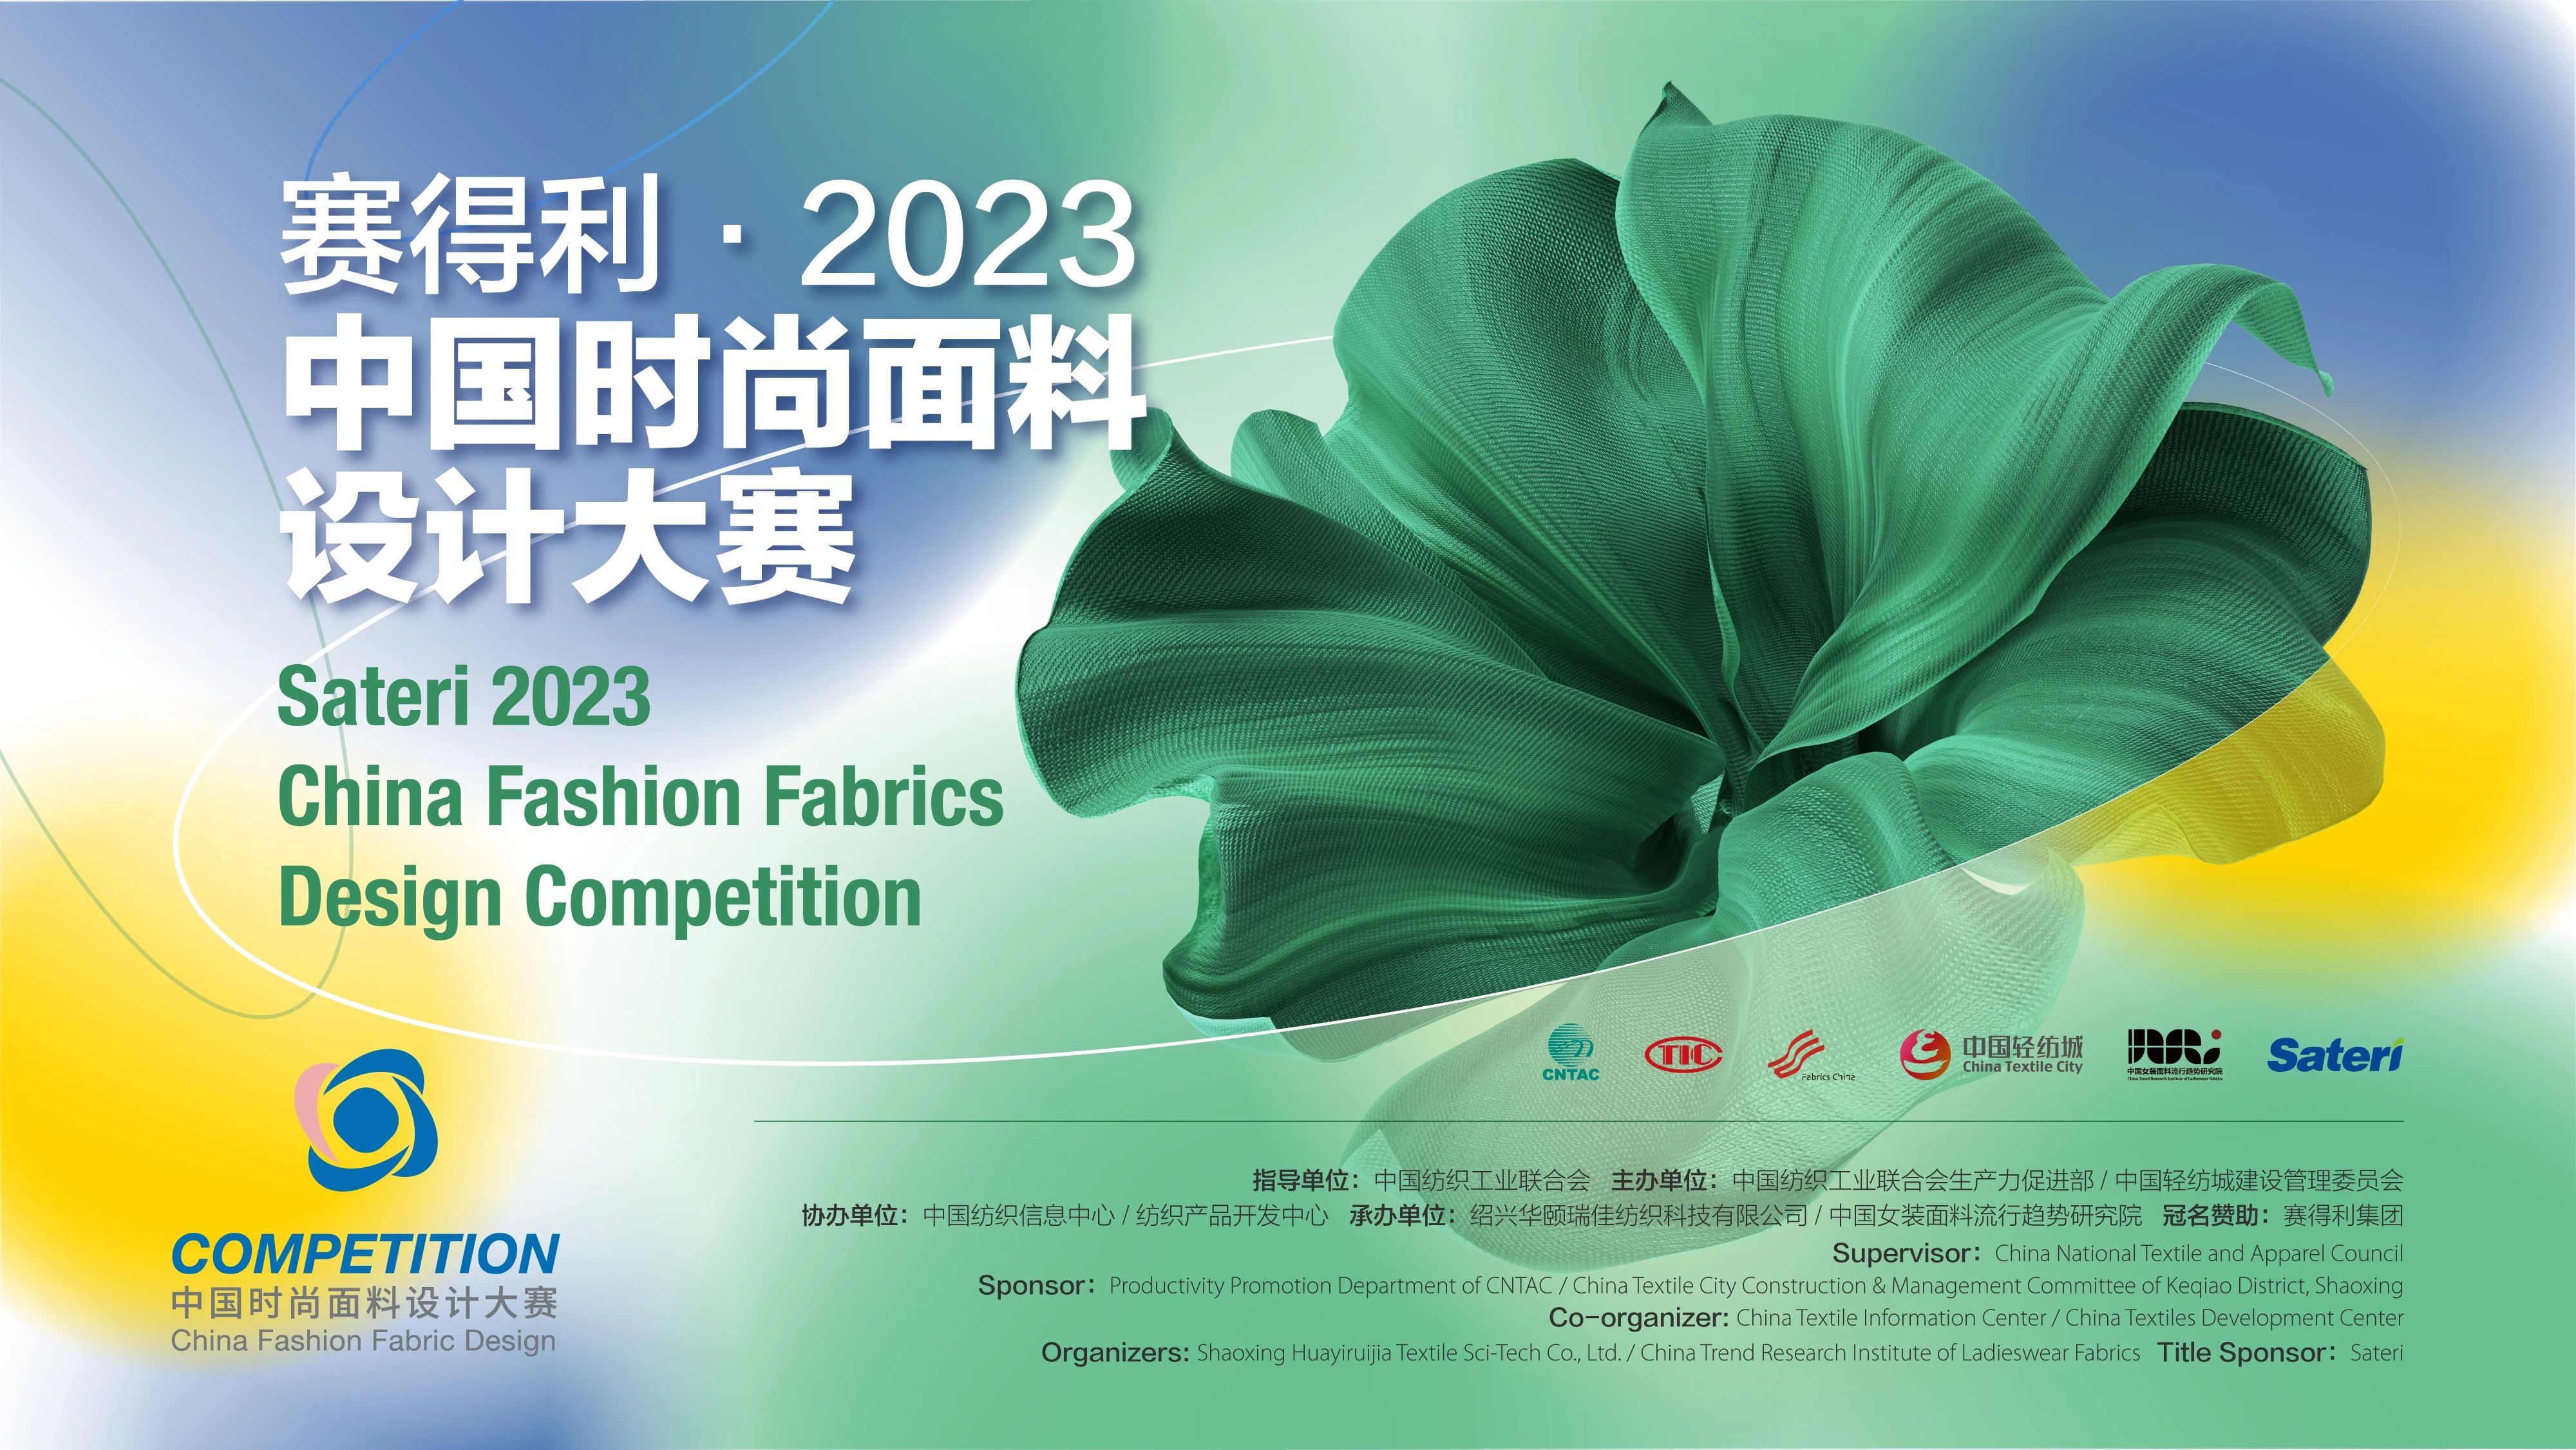 获奖佳讯|祝贺西布朗纺织喜获•赛得利2023中国时尚面料设计大奖奖项